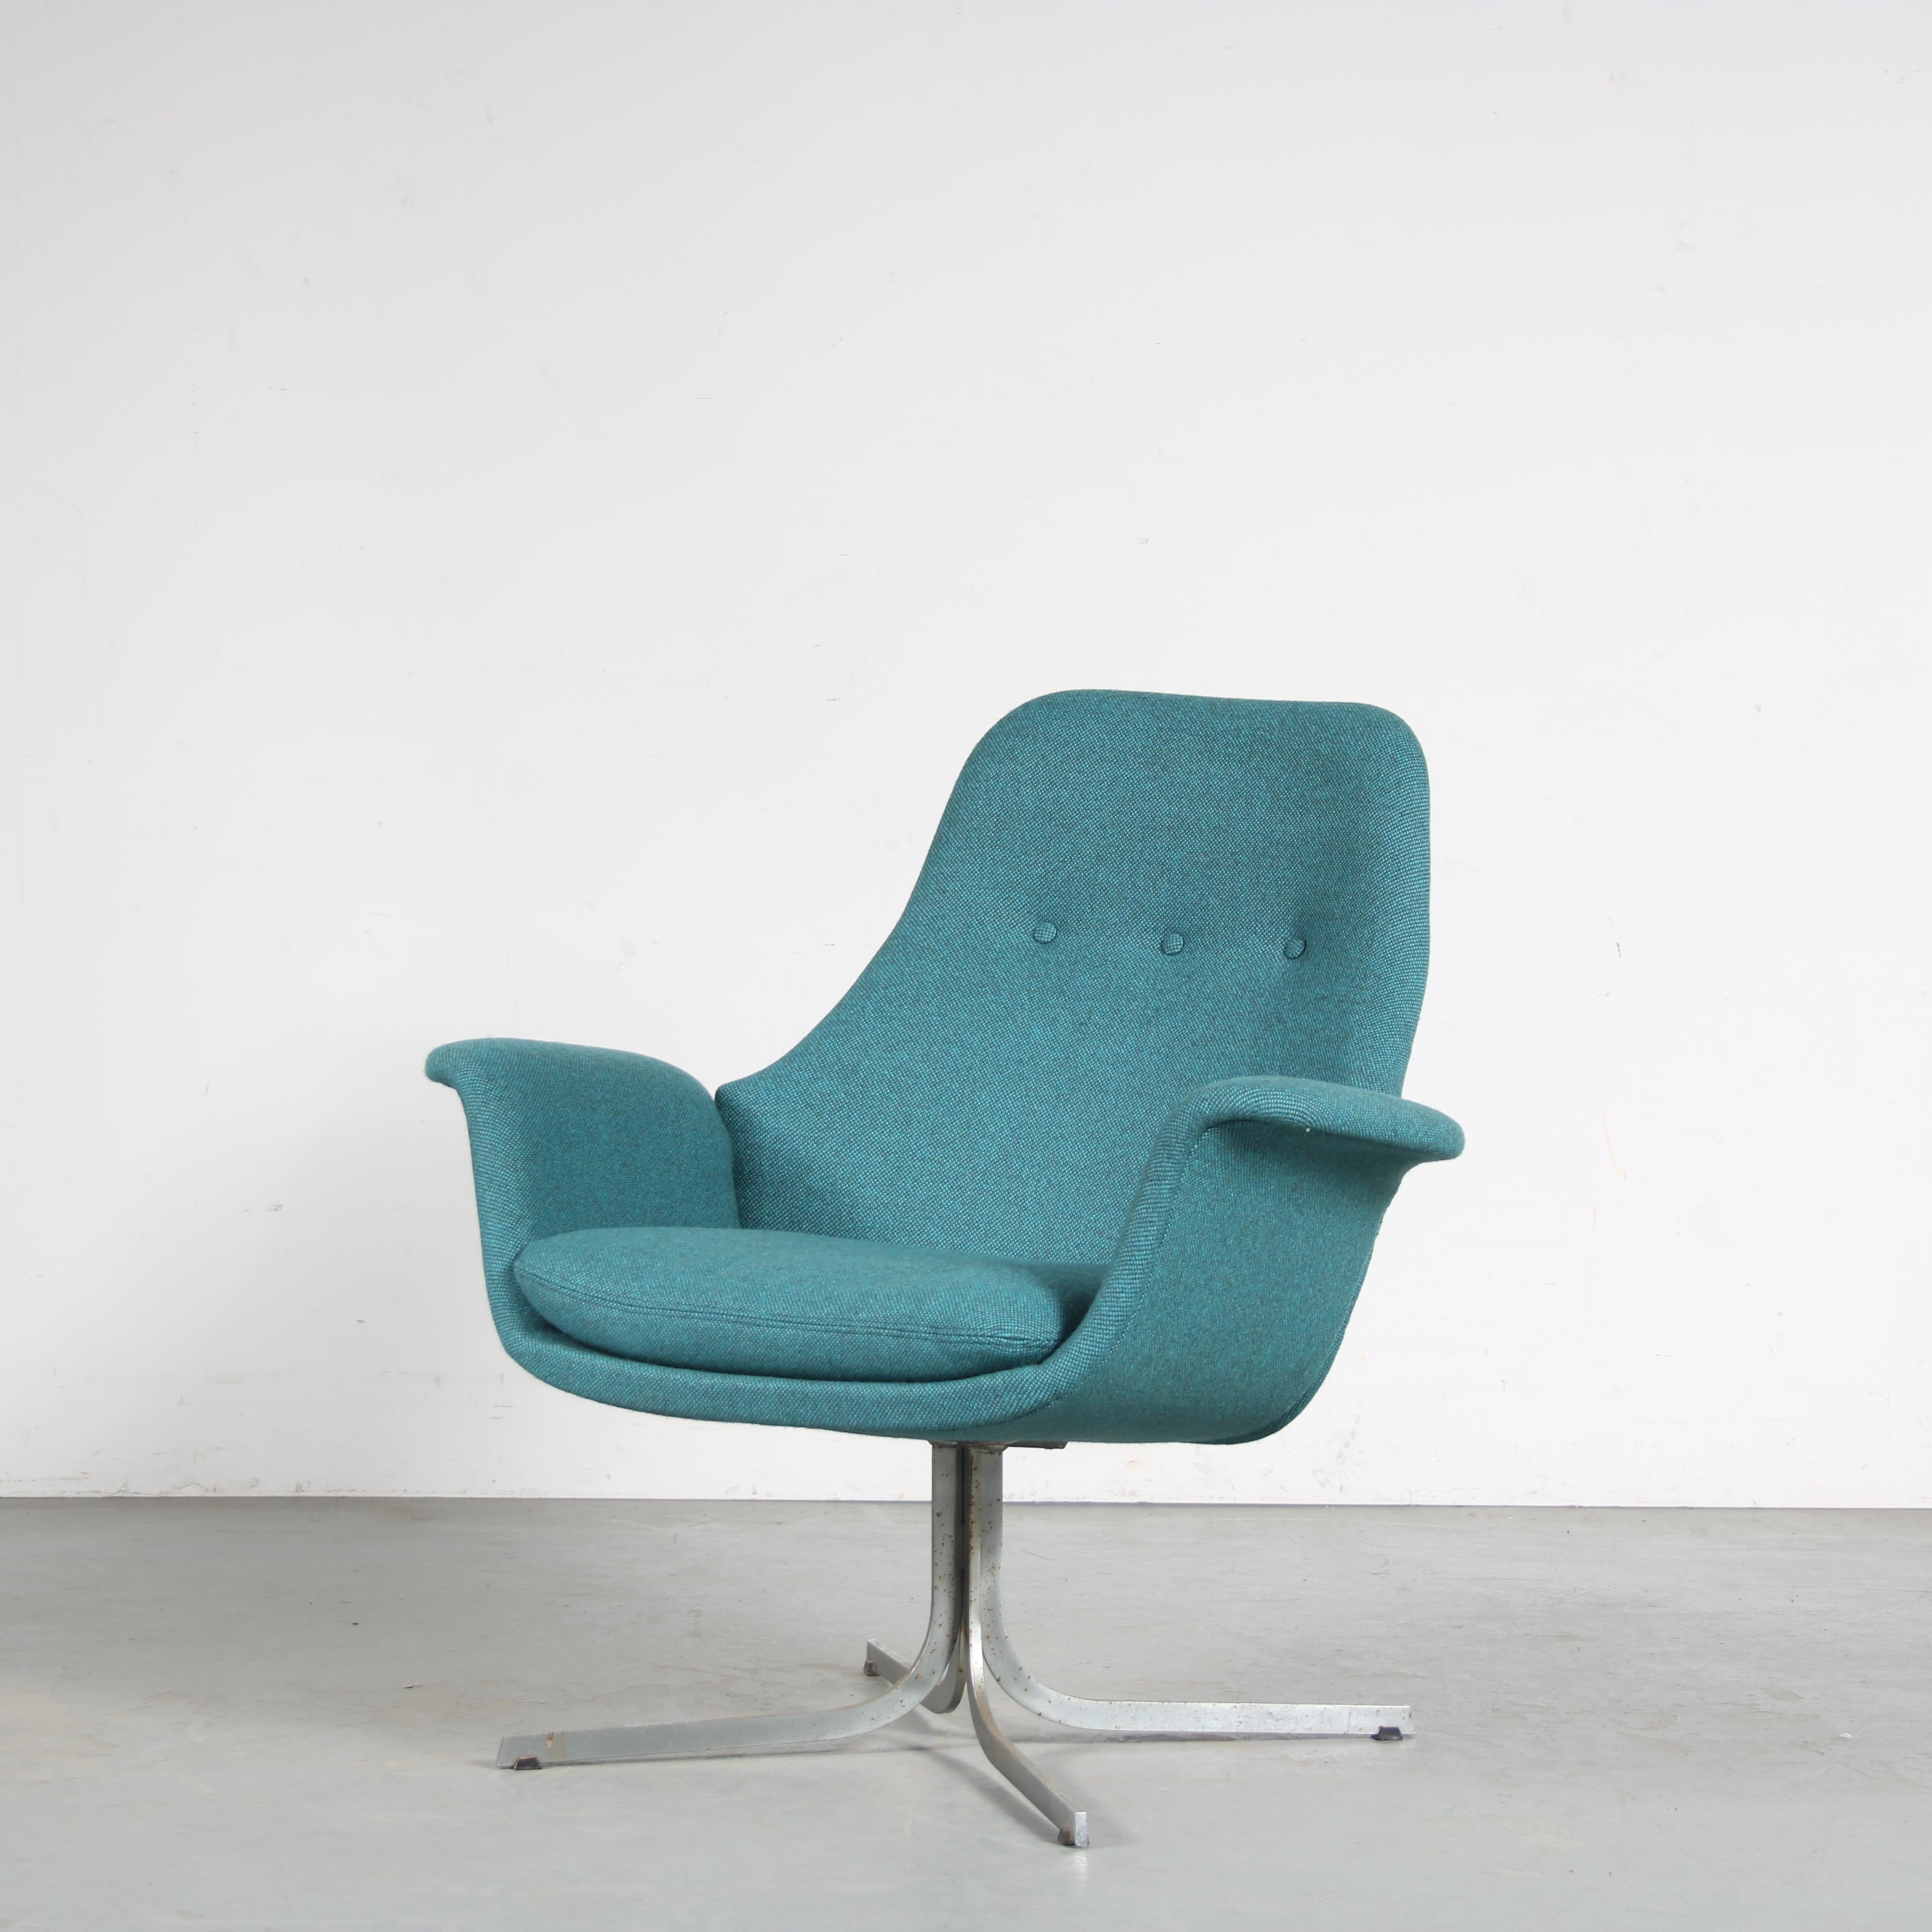 

Ein seltenes Sesselmodell, entworfen von Pierre Paulin, hergestellt von Artifort in den Niederlanden um 1960.

Dieses auffällige Stück hat einen schönen, eleganten Stil. Der Sitz ist schön tulpenförmig gebogen. Die geschwungenen Details sind